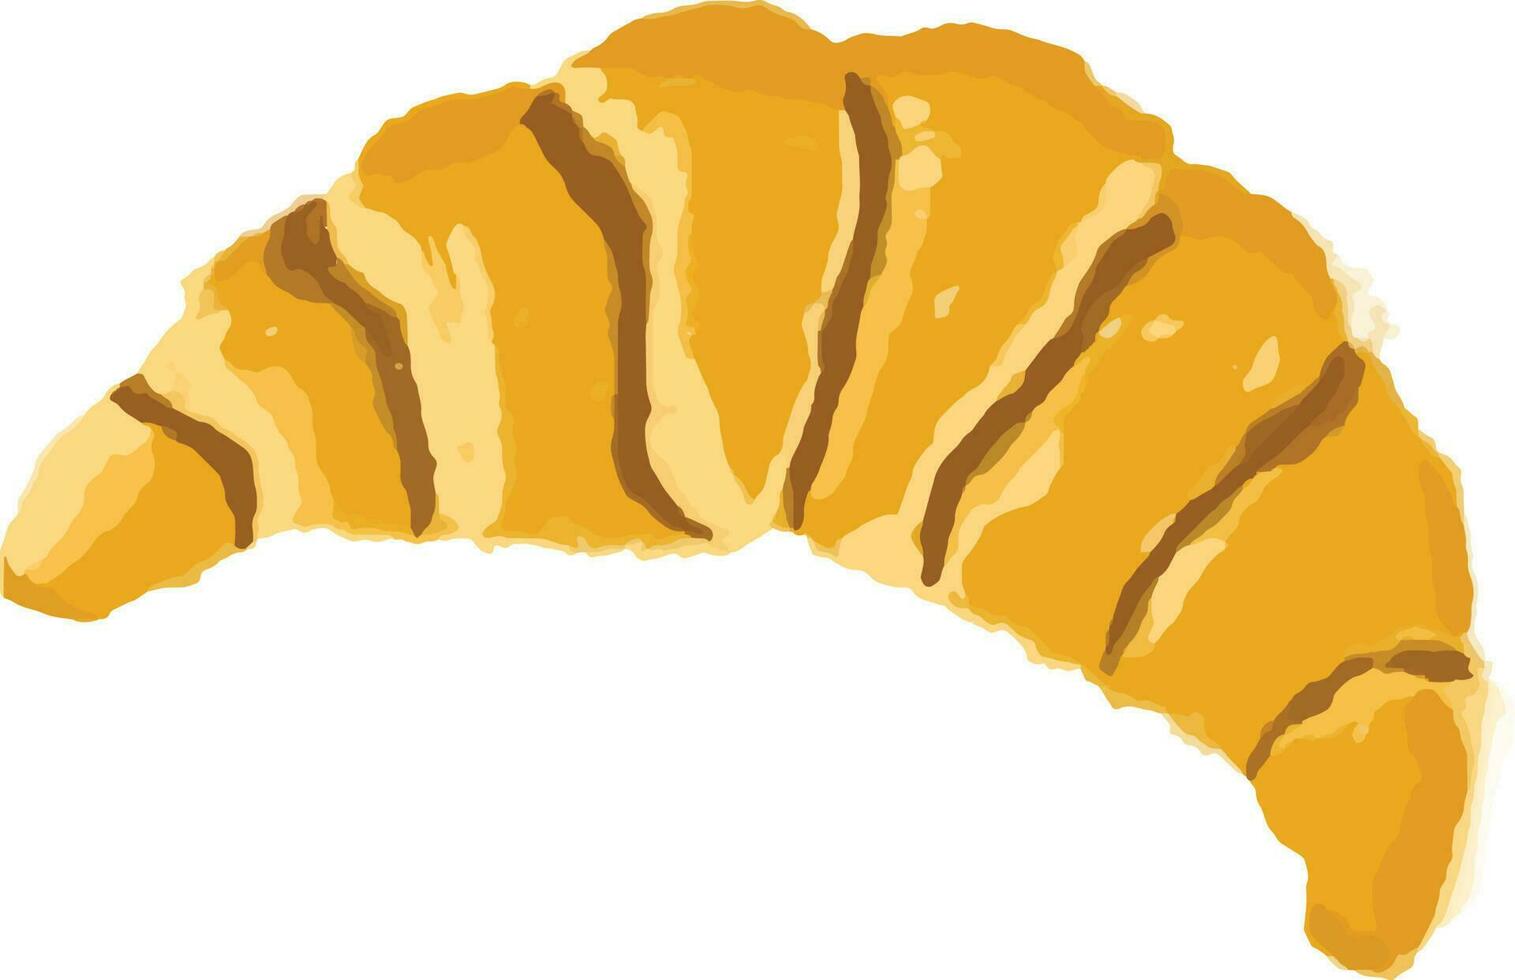 detta bild var inspirerad förbi croissant bröd vektor